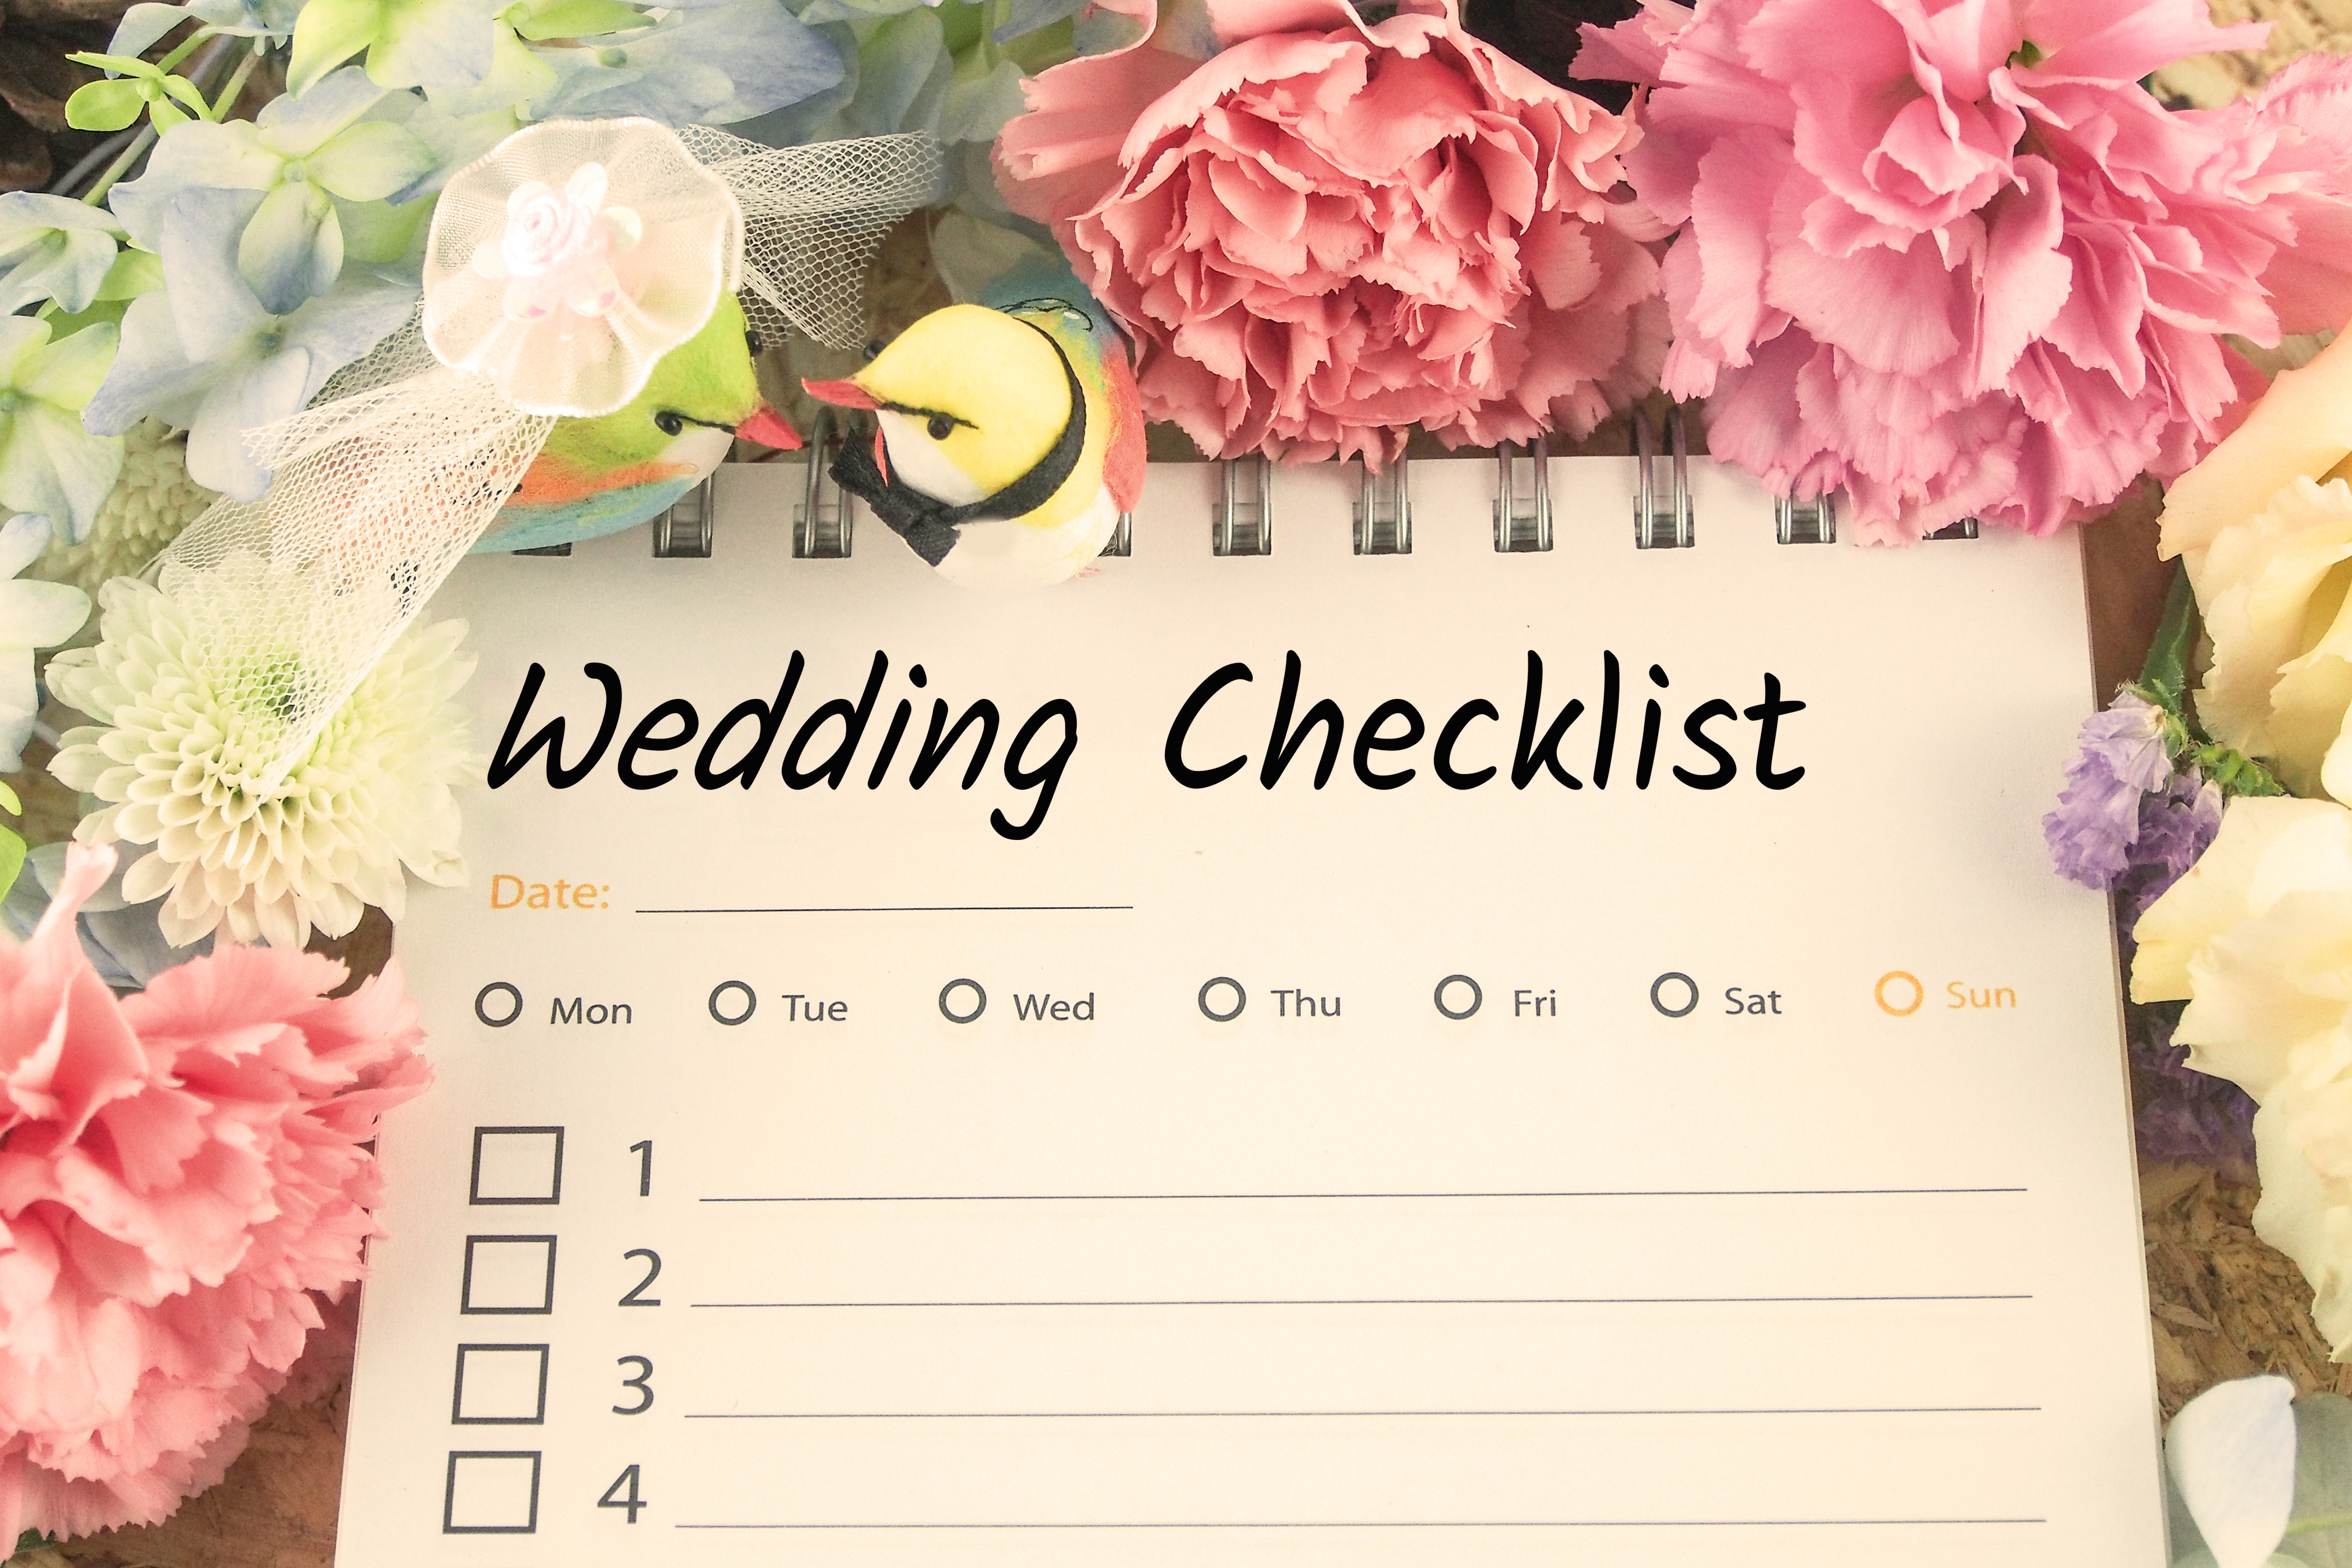 Wedding Checklist - shutterstock_406104781